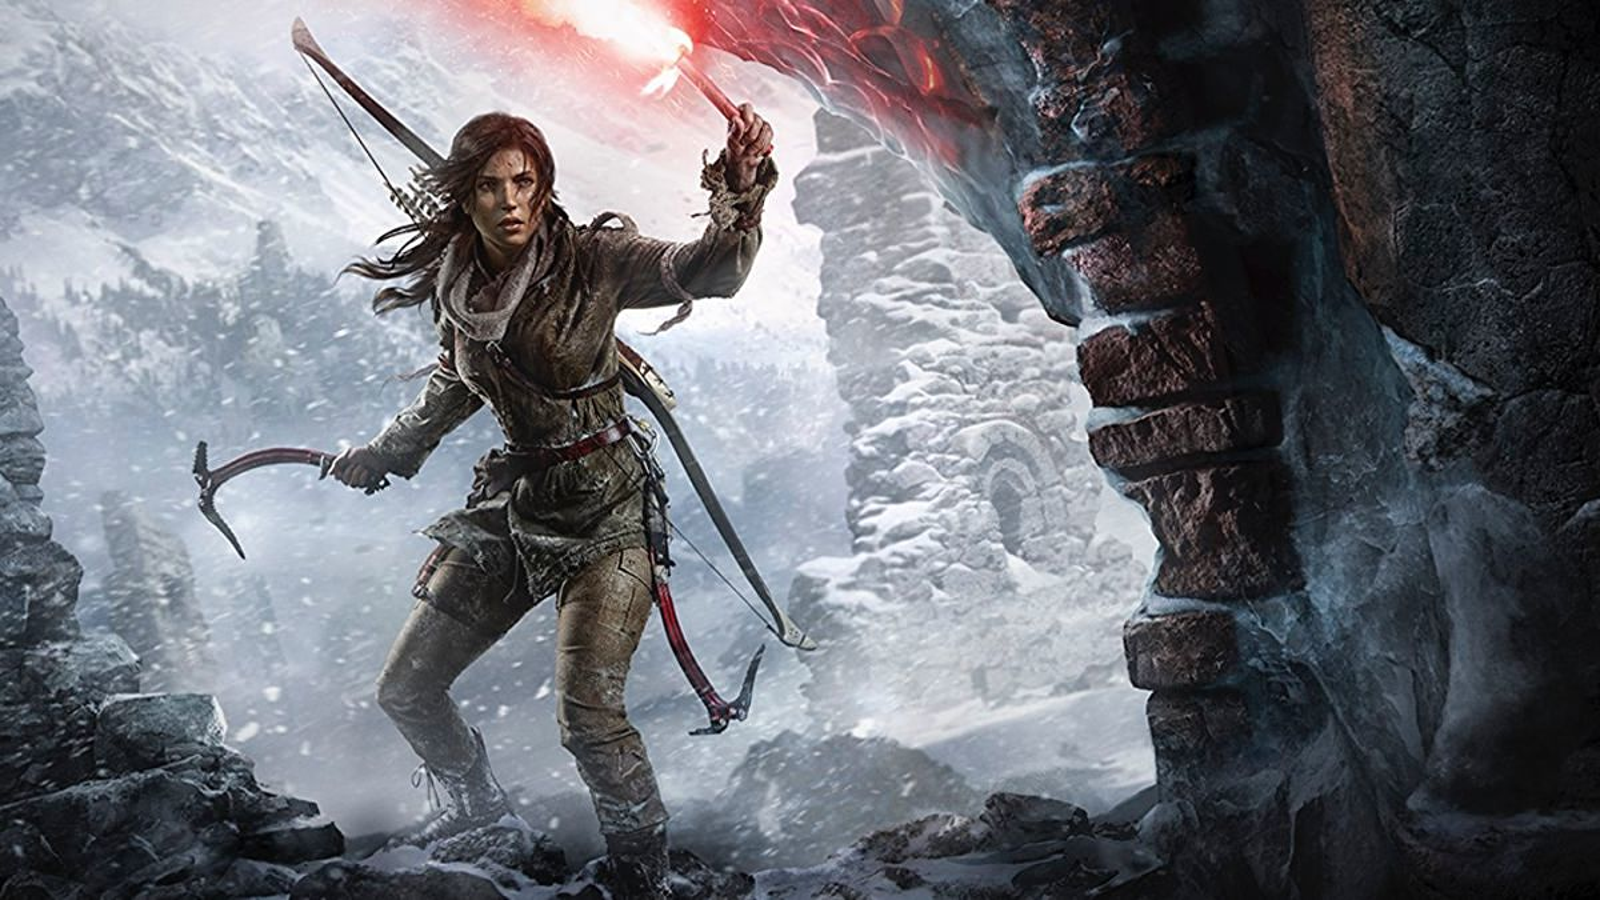 RUMOR] Elementos Sobrenaturais vão retornar em Tomb Raider 2! - LARA CROFT  PT: Fansite de Tomb Raider oficializado e premiado